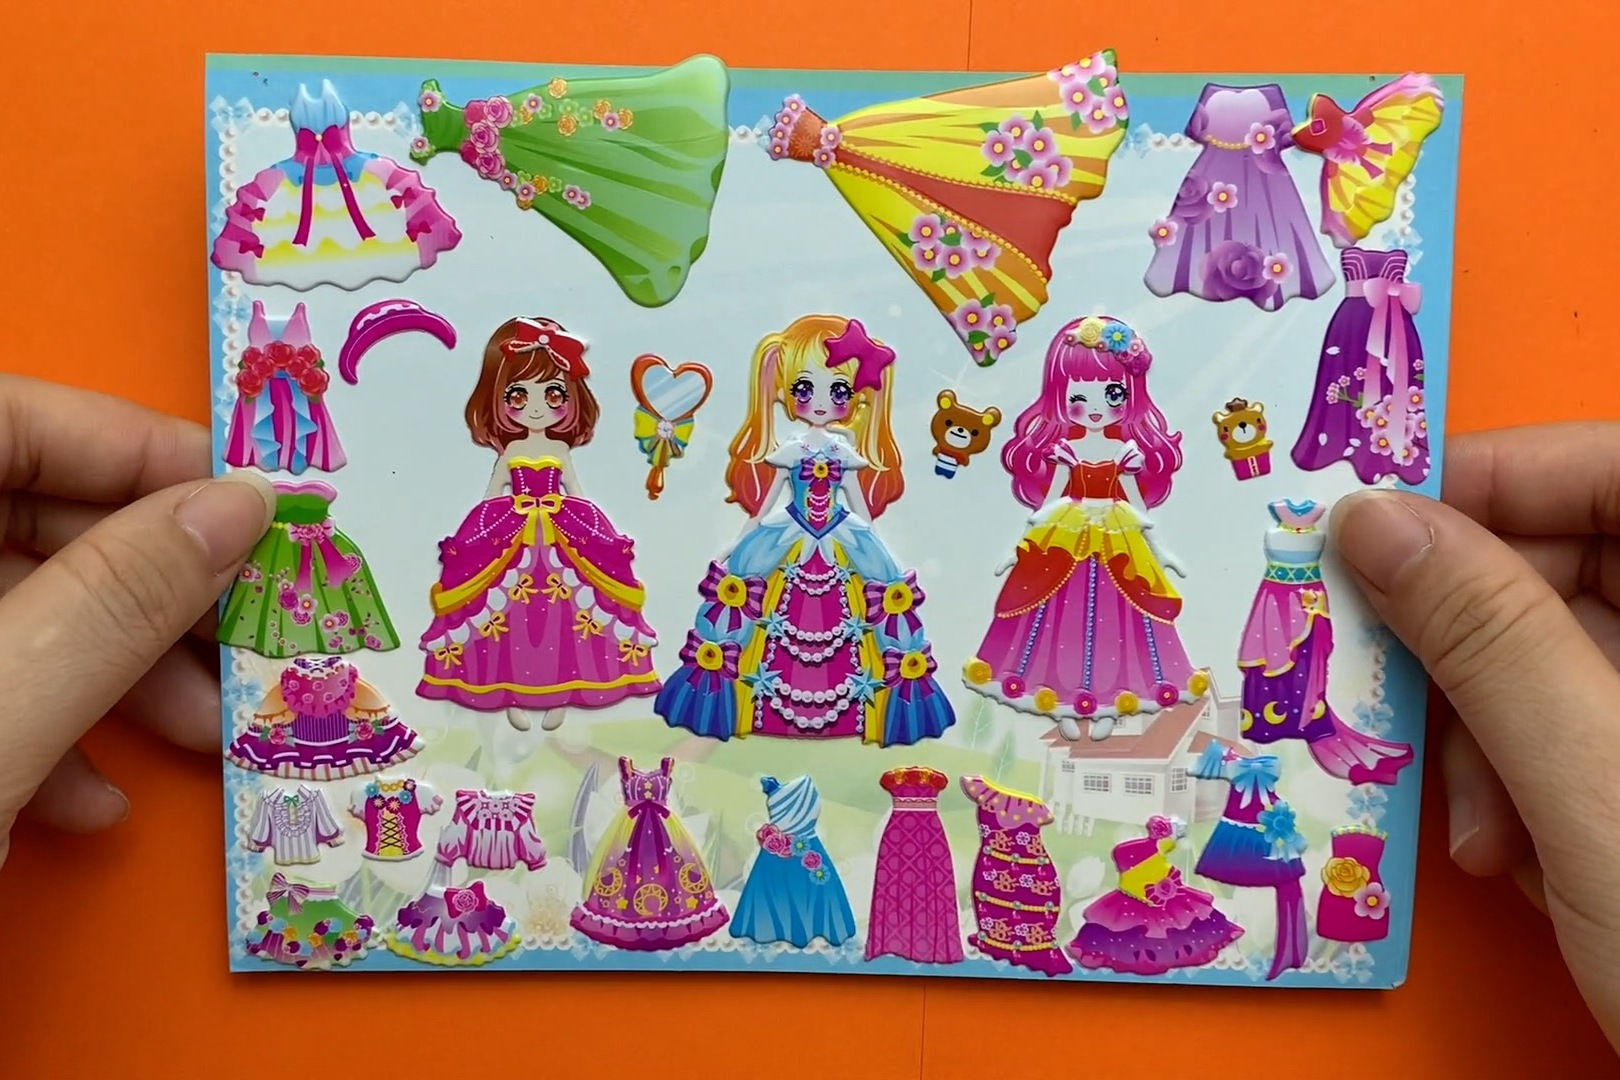 纸娃娃泡泡换装贴纸:给三位公主搭配时尚裙子,各种款式都很美